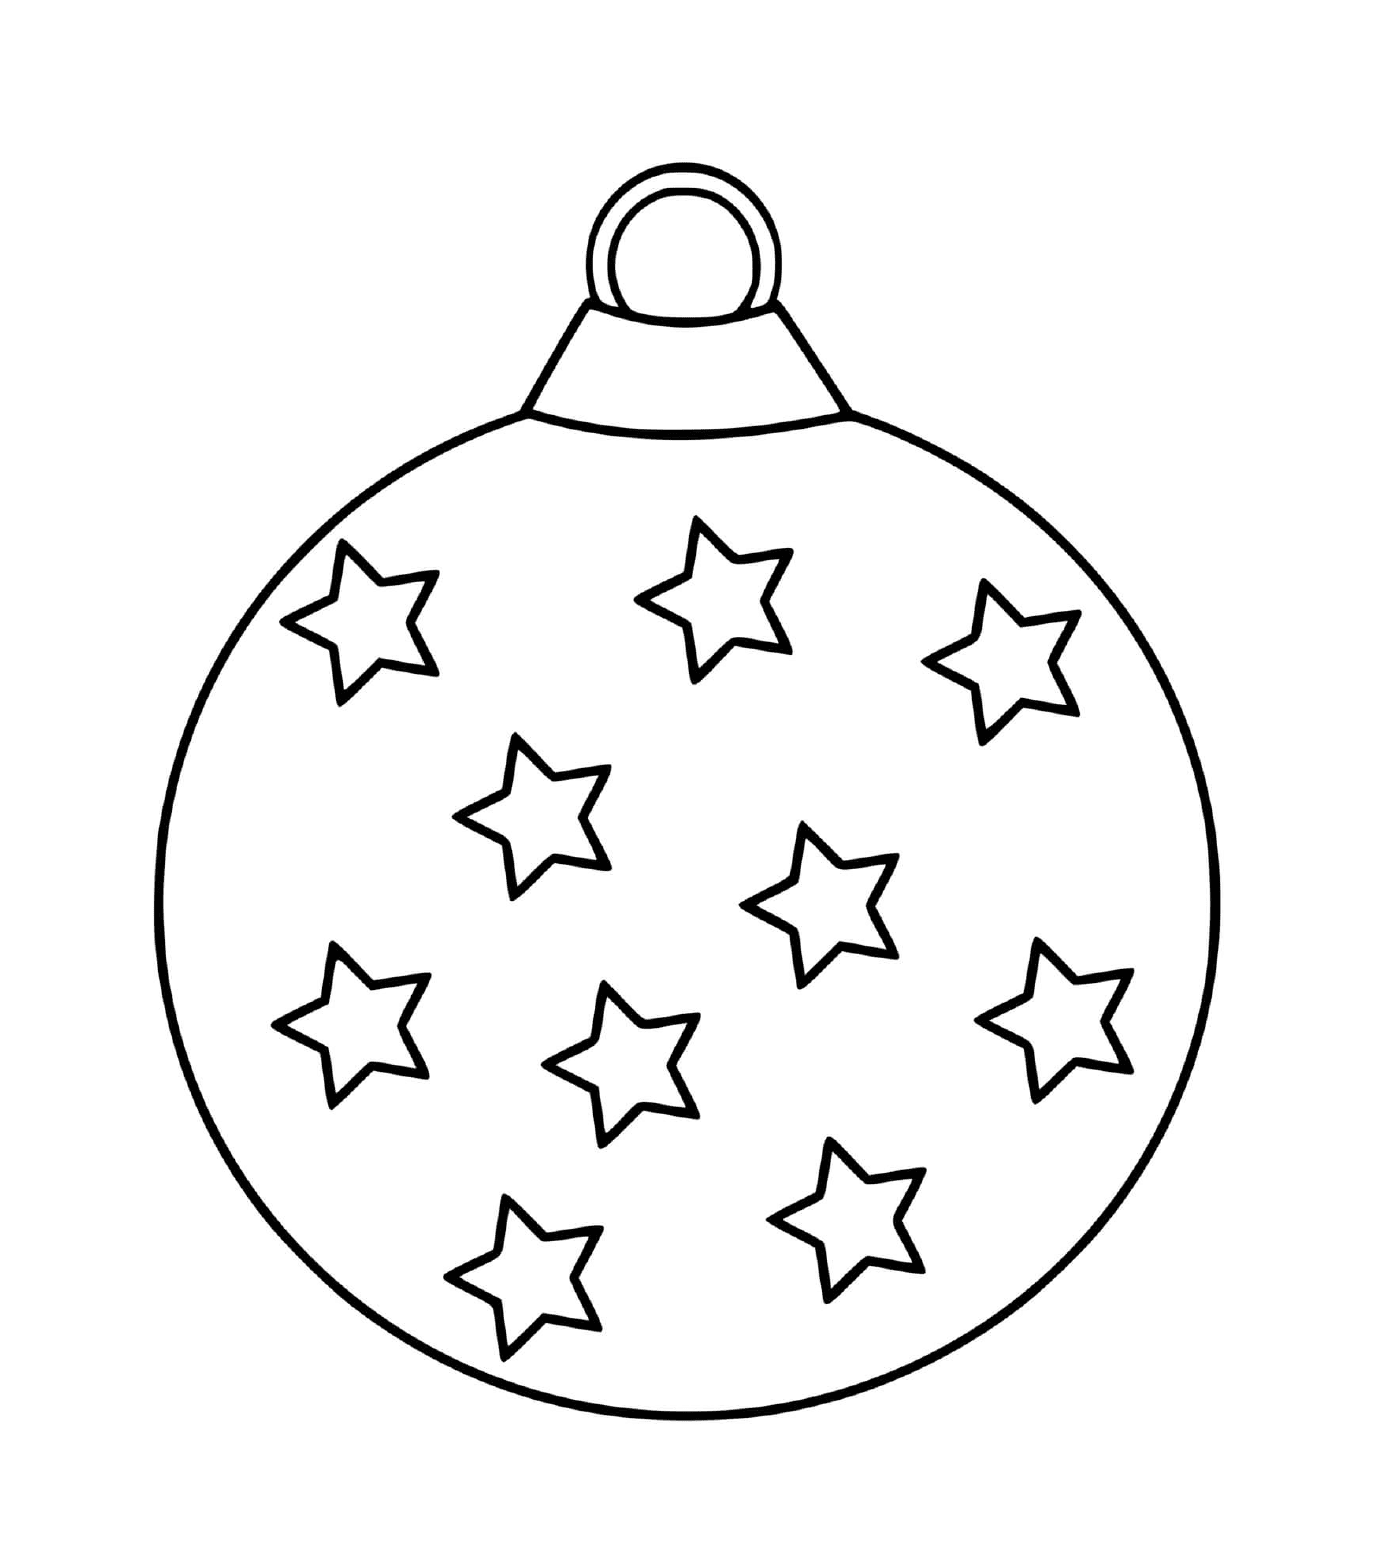  Christmas ball with stars 